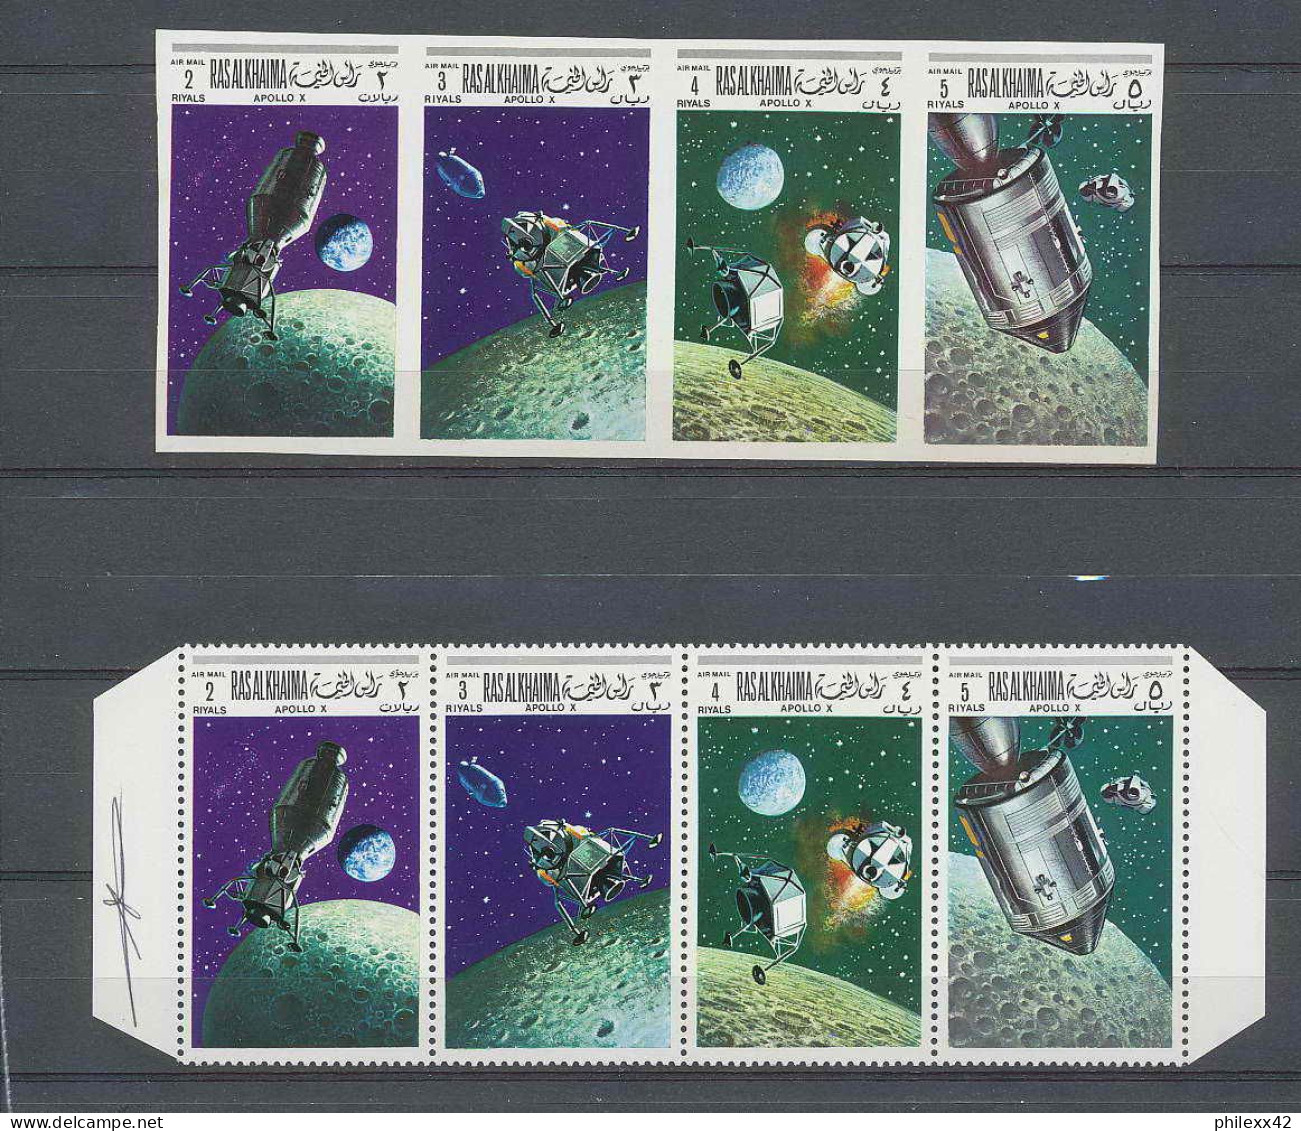 0909/ Espace (space) ** MNH Apollo 10 Ras Al Khaima 4300 Ras 1/4 + Non Dentelé Imperf Autographe - Russia & USSR